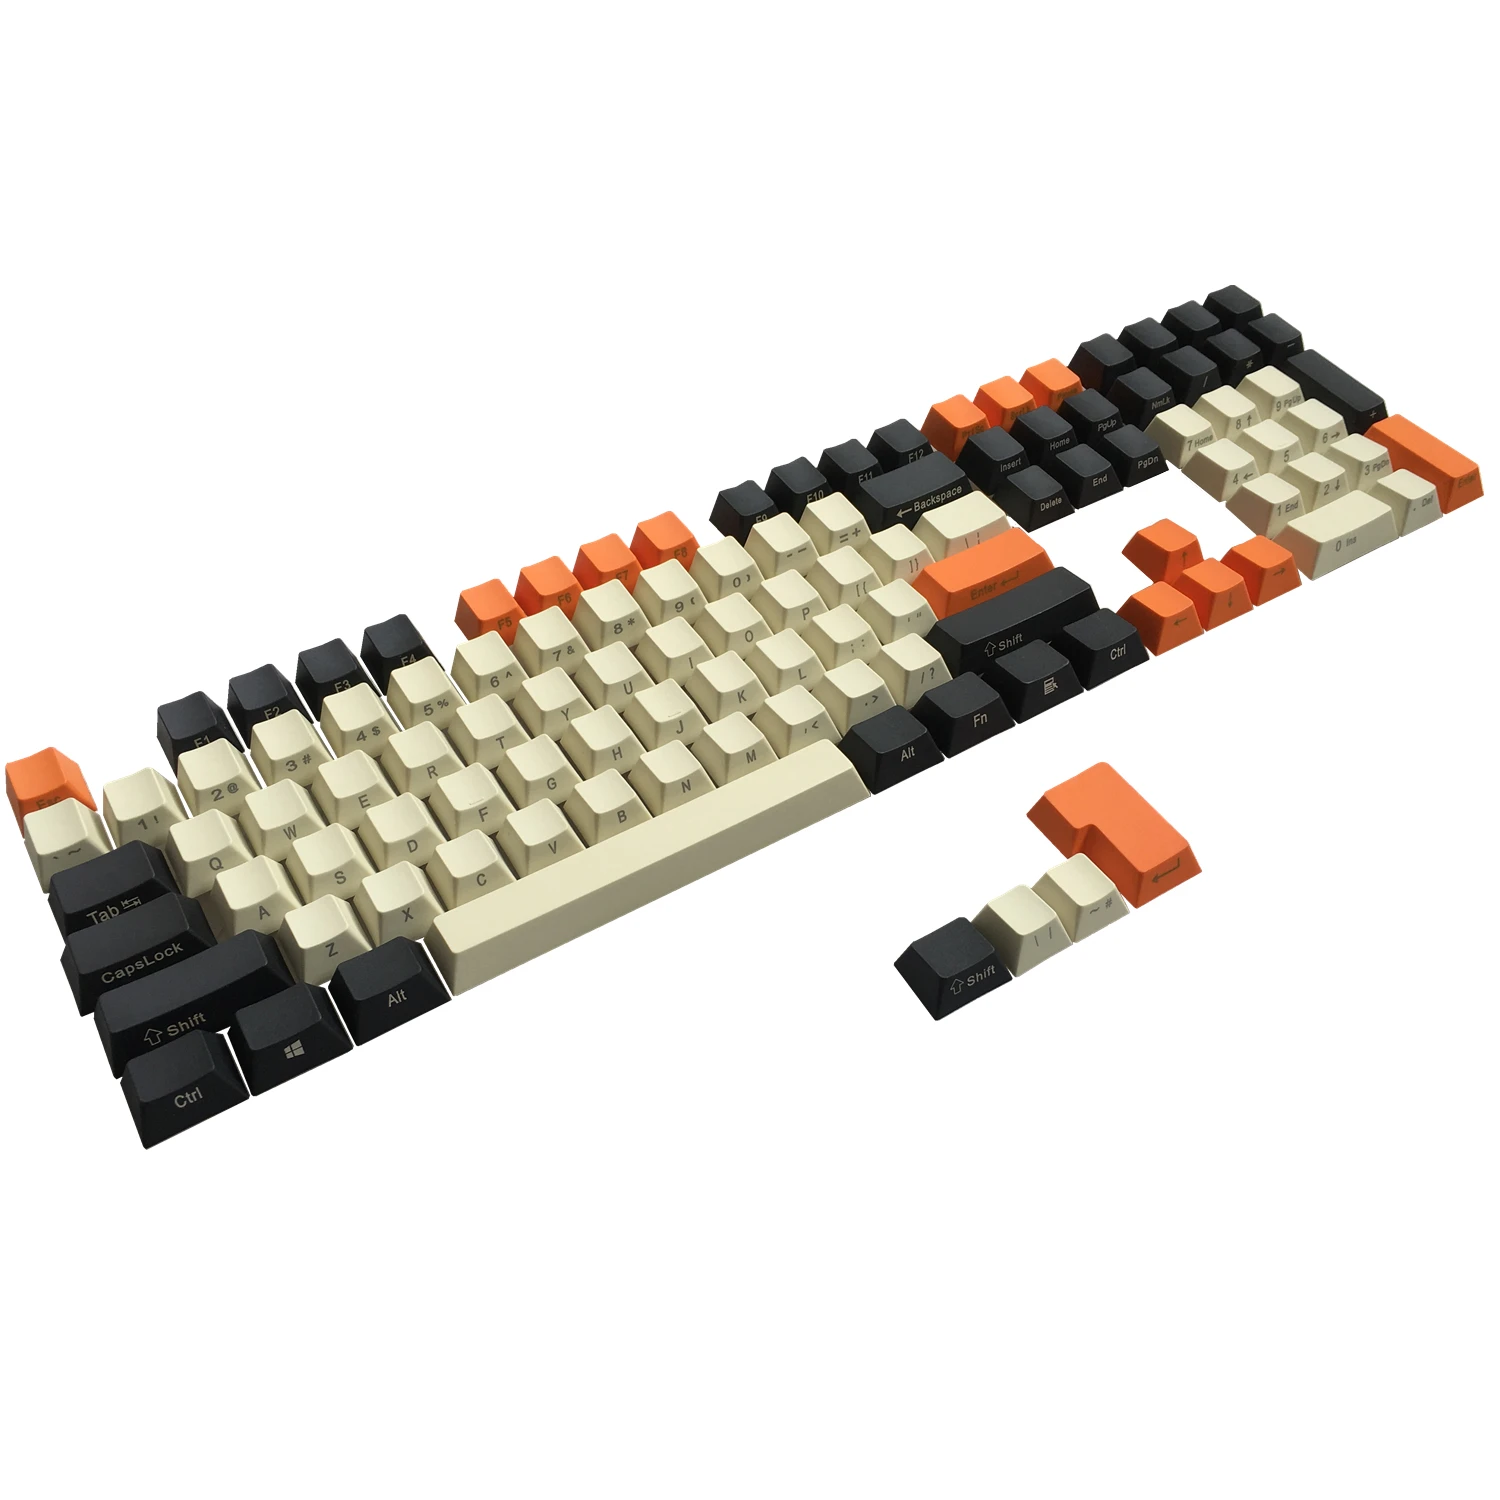 

Колпачки для клавиш PBT Carbon с боковой печатью, набор клавиш ANSI ISO Cherry MX для механической клавиатуры 61 68 60%/TKL 87/104/108 MX